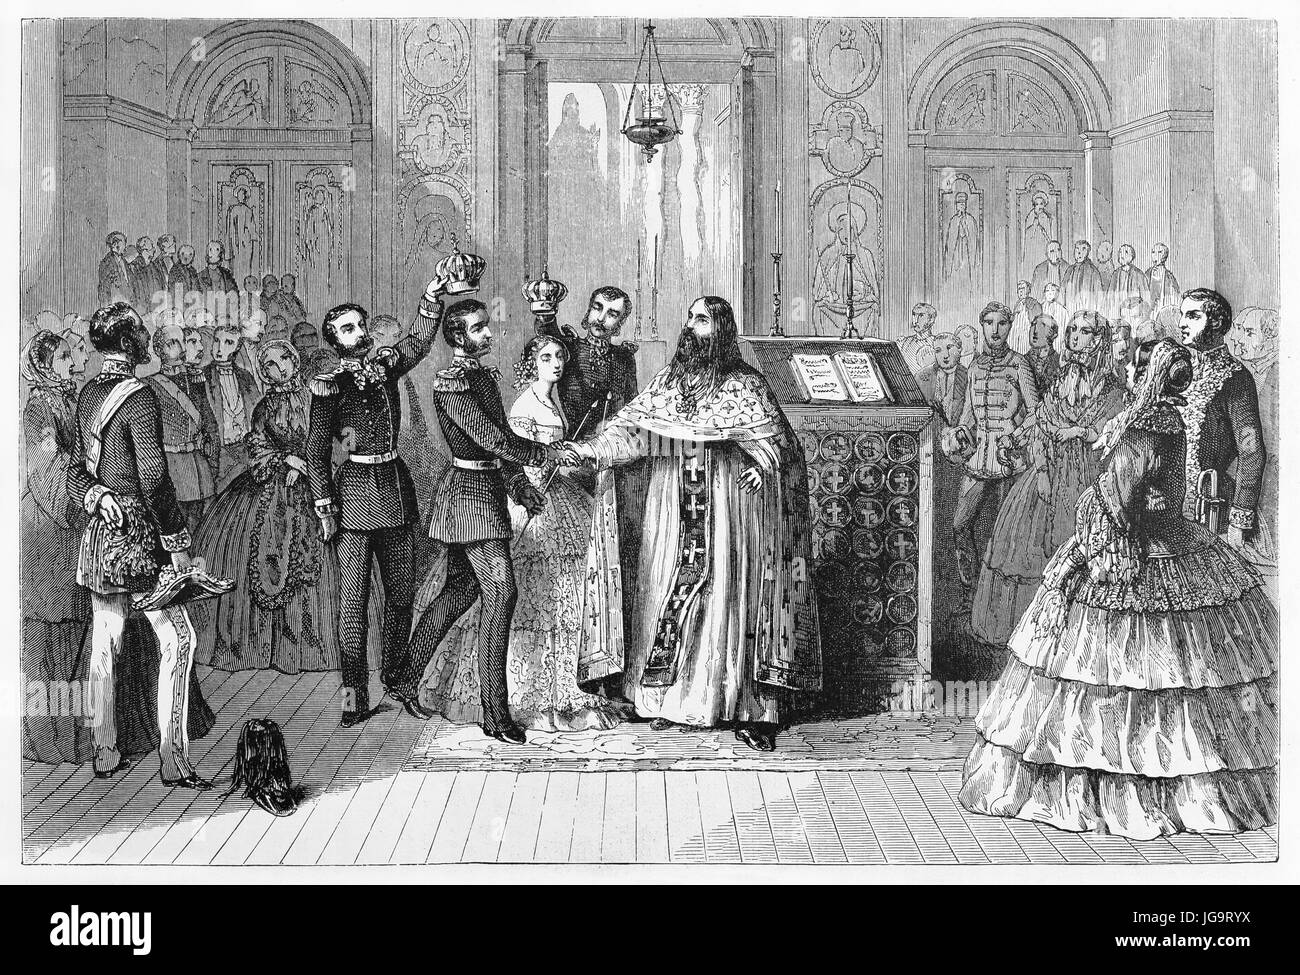 Aristokratische russische Hochzeit in einer Kapelle. Braut und Bräutigam erhalten eine Krone auf ihren Köpfen. Gray tone Radierung Stil Kunst von Blanchar 1861 Stockfoto